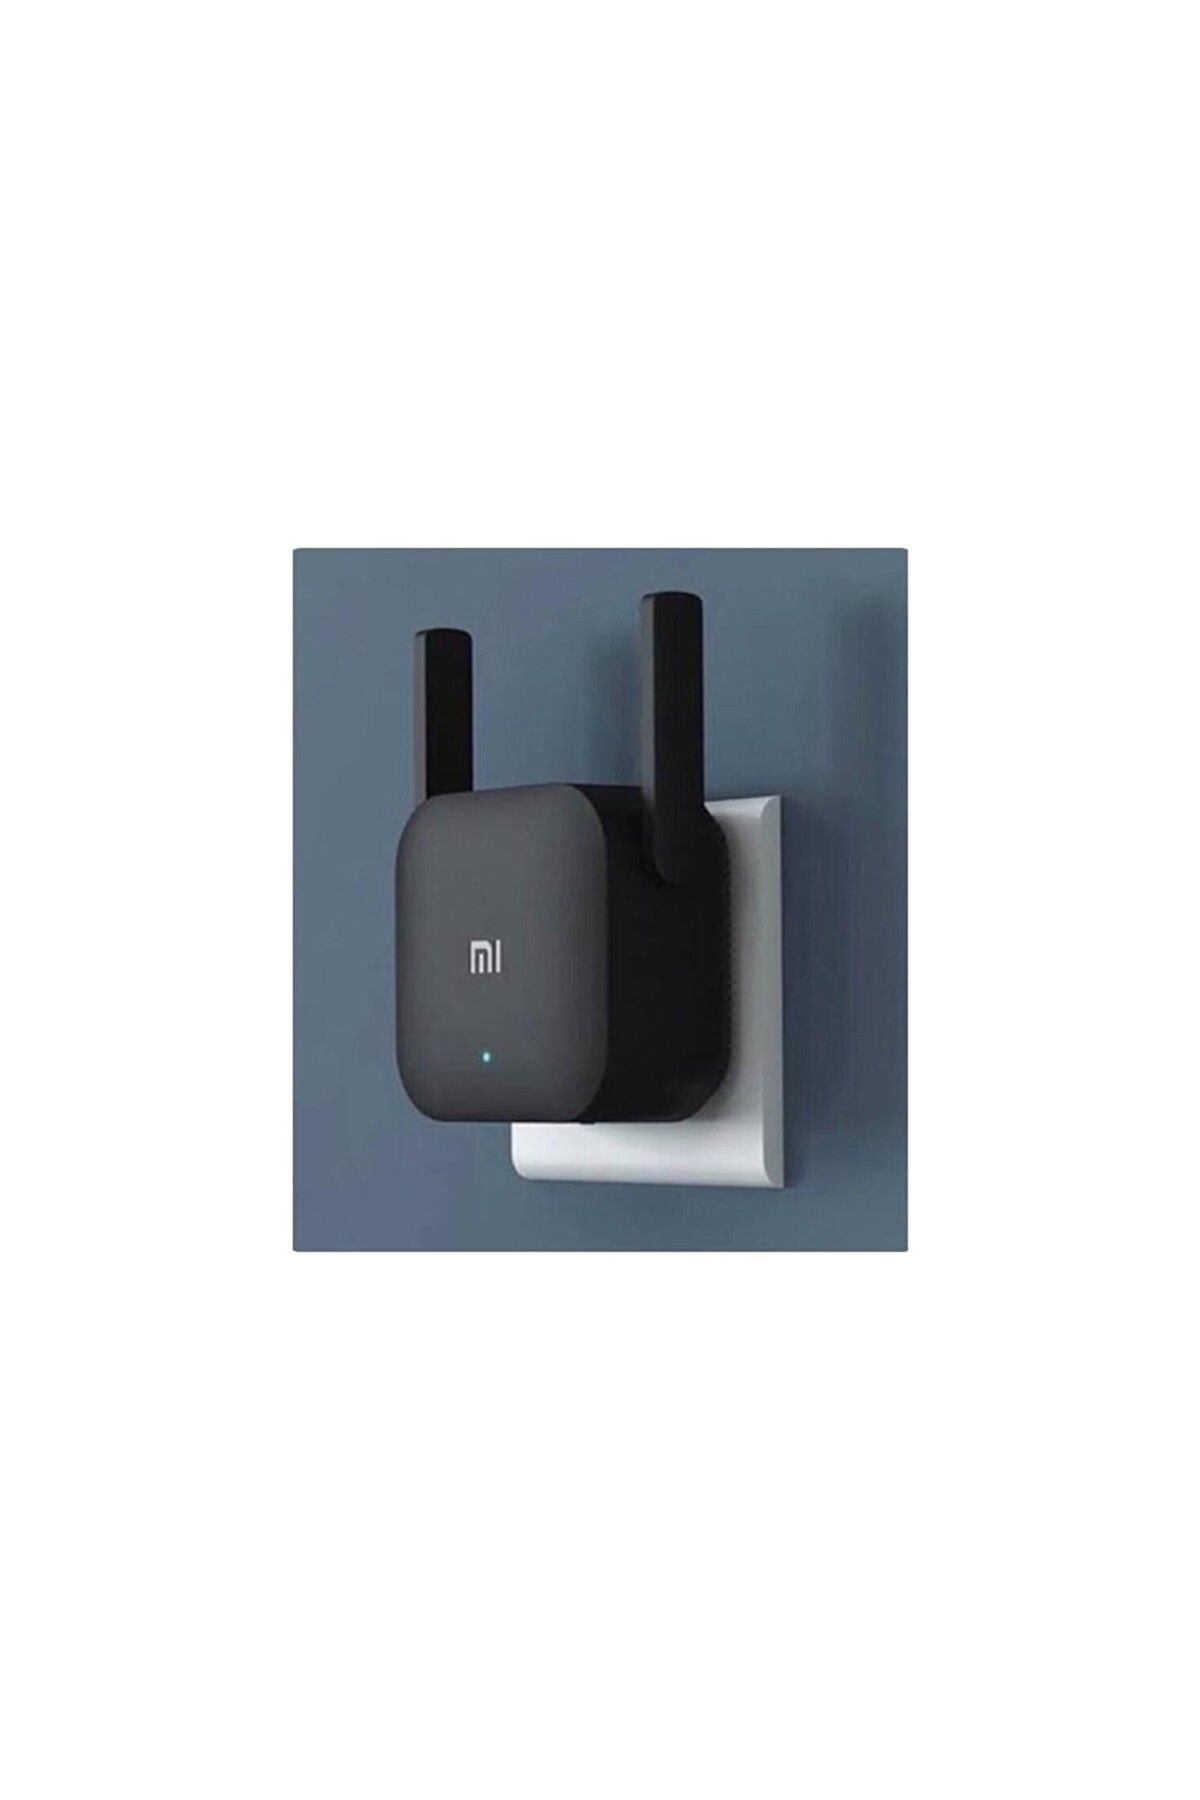 sommeow Mi Wifi Pro Sinyal Yakınlaştırıcı - Internet Güçlendirici - Internet Dağıtıcısı - Sinyal Güçlendiric